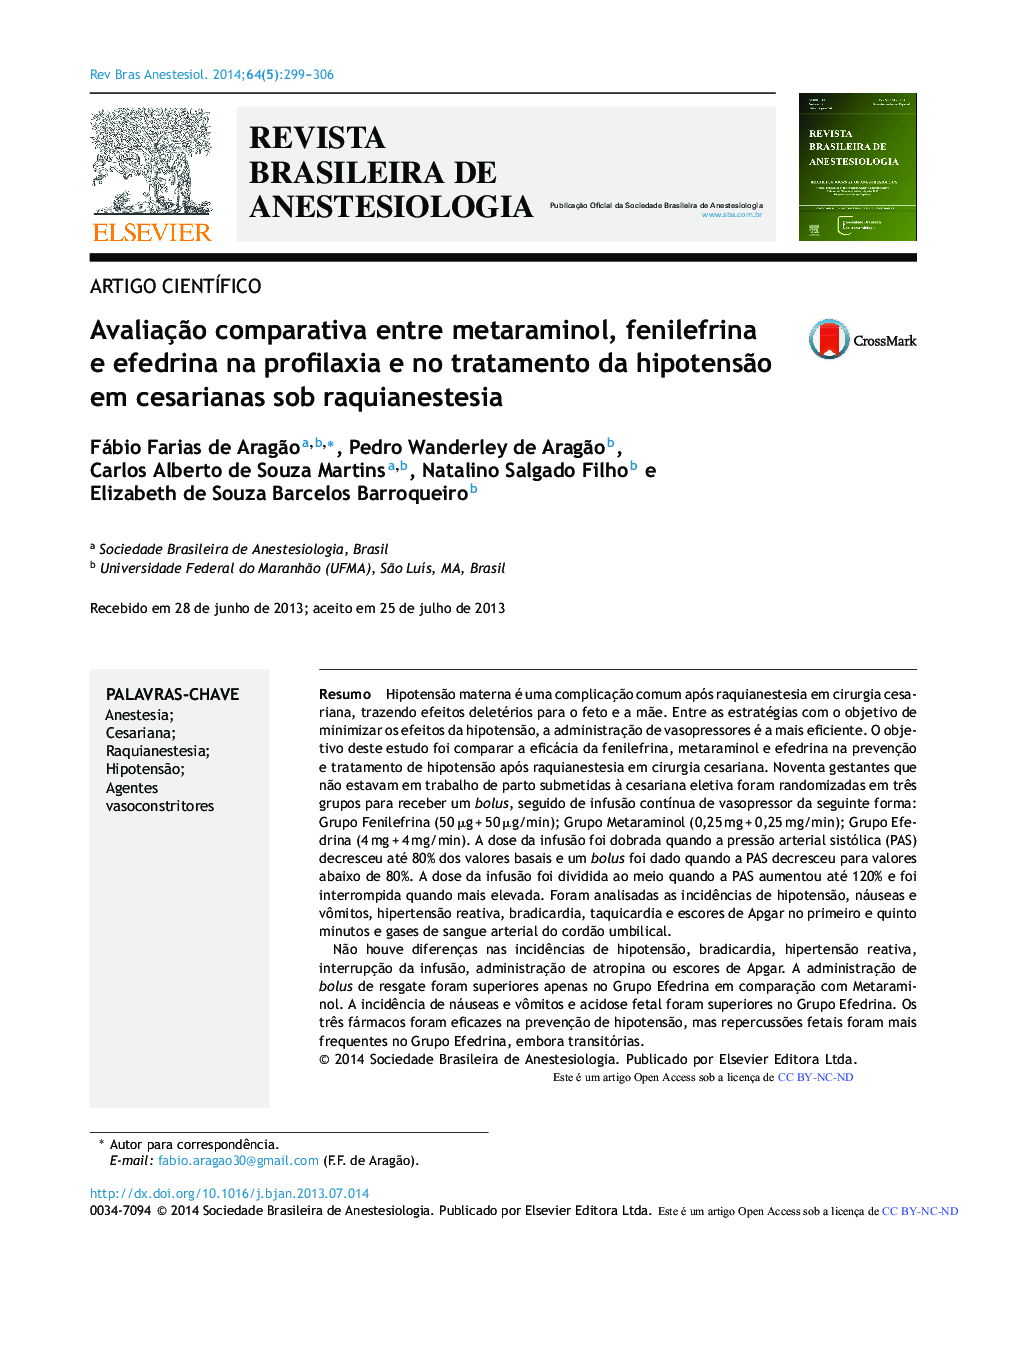 Avaliação comparativa entre metaraminol, fenilefrina e efedrina na profilaxia e no tratamento da hipotensão em cesarianas sob raquianestesia